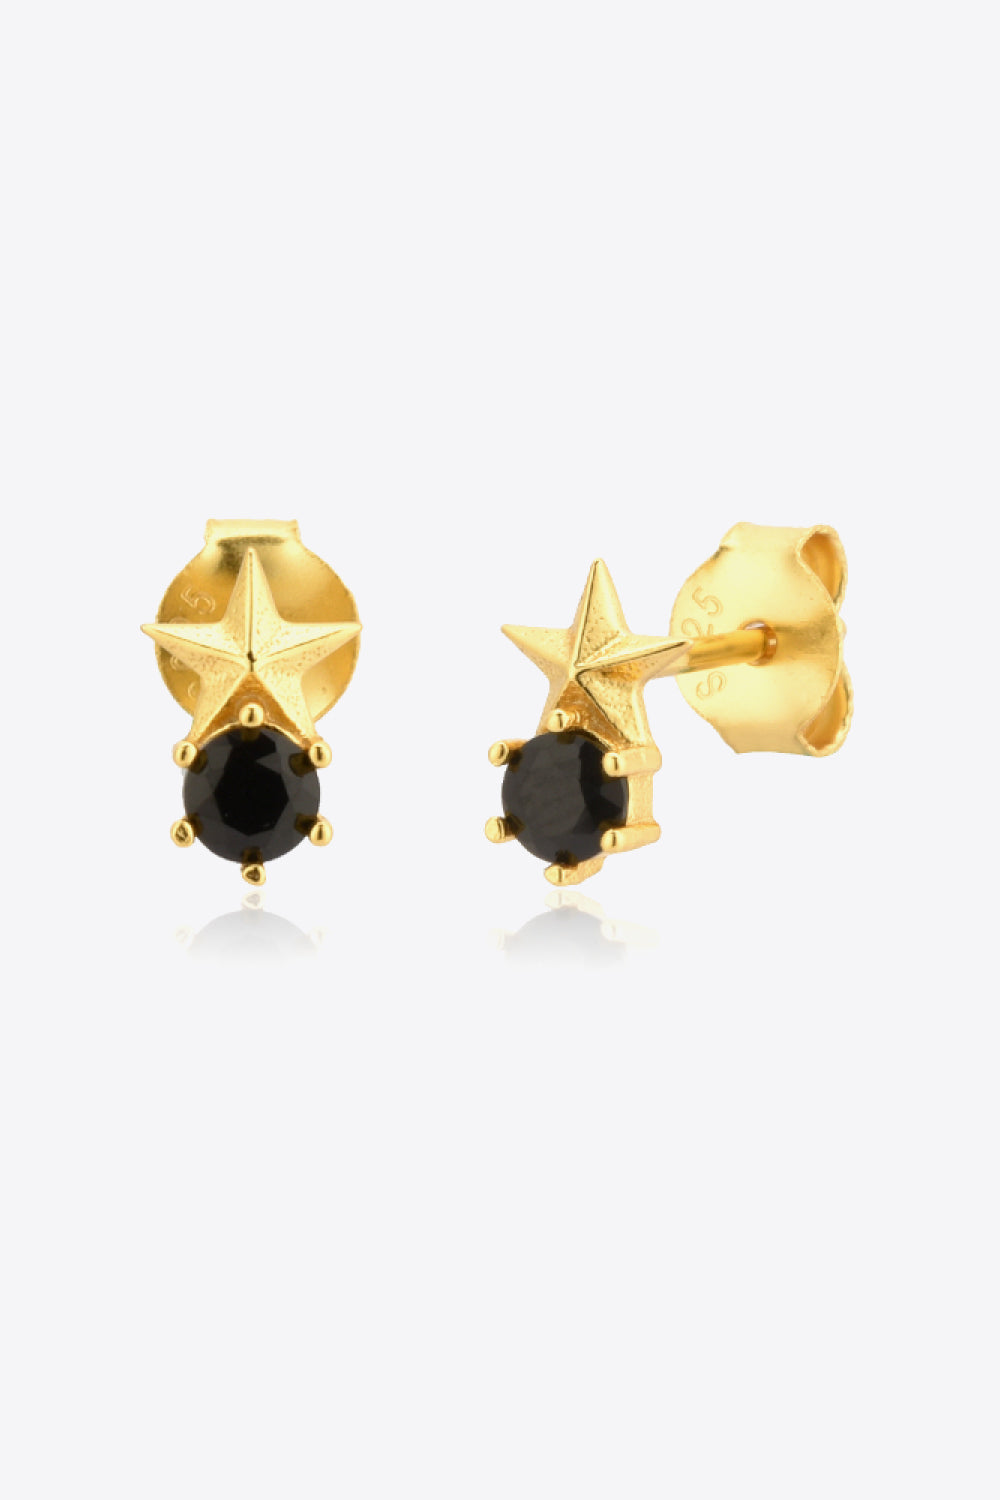 Zircon Star Stud Earrings - Earrings - FITGGINS